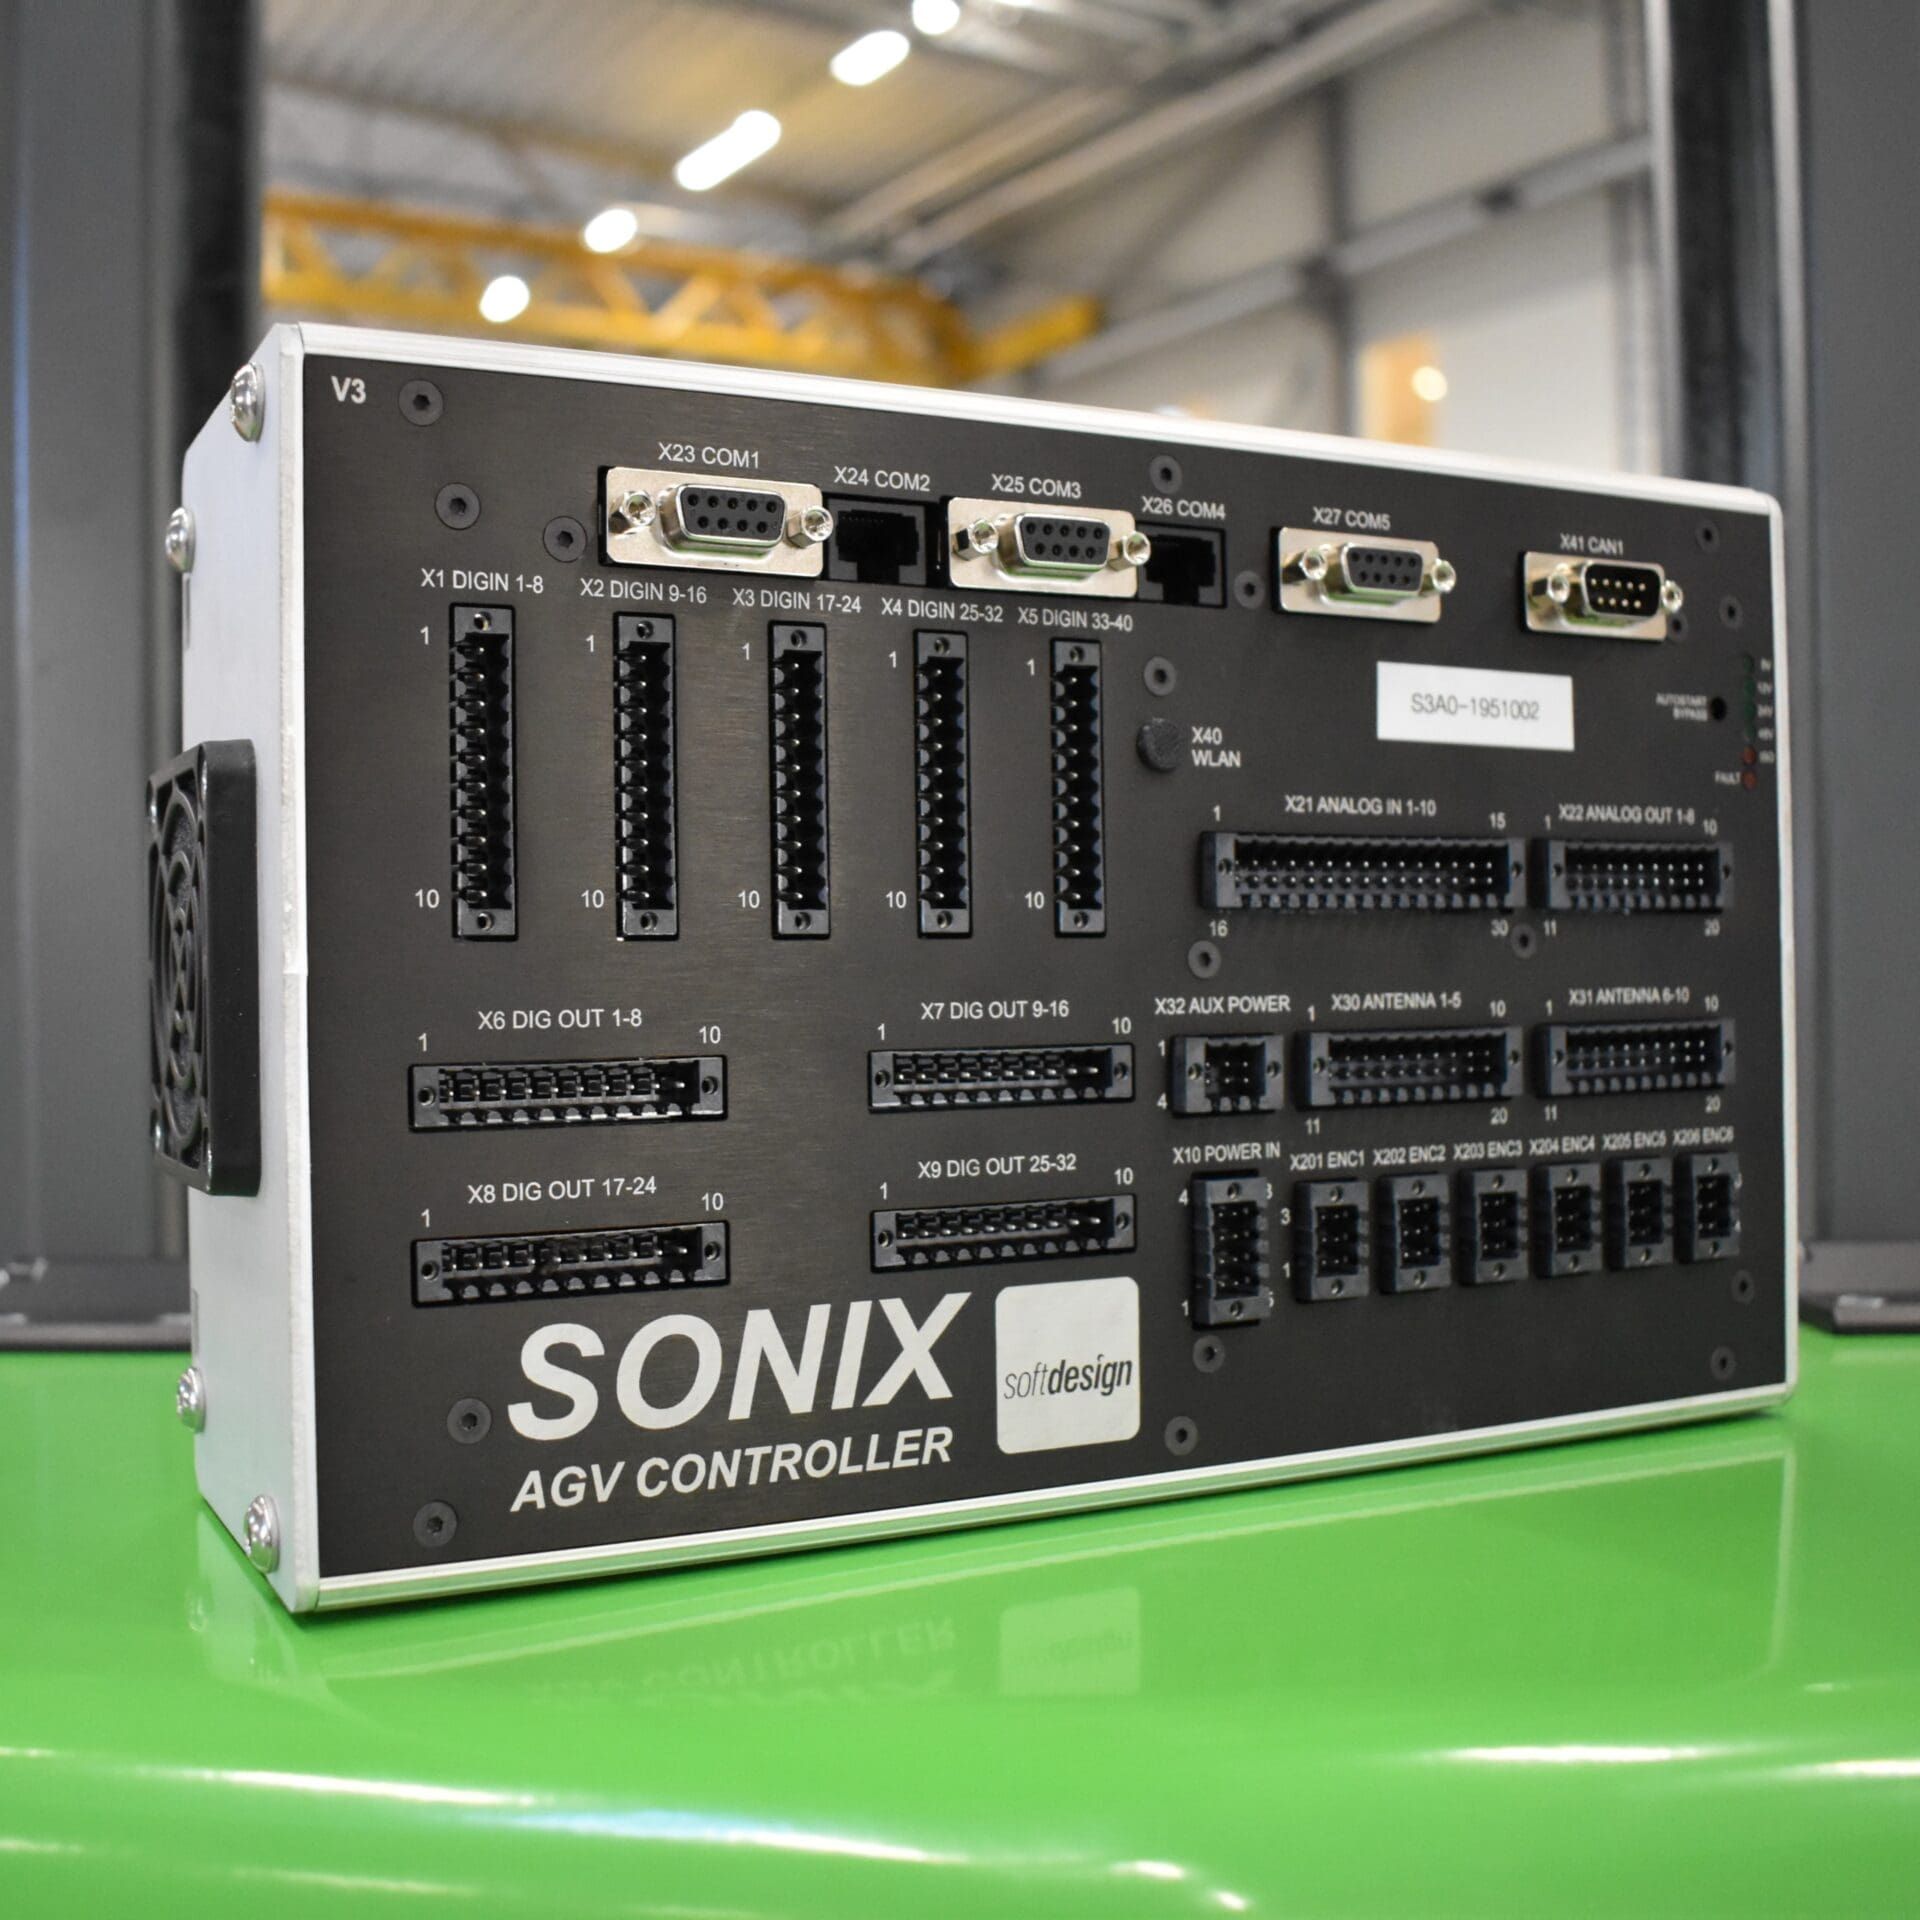 Sonix AGV Controller